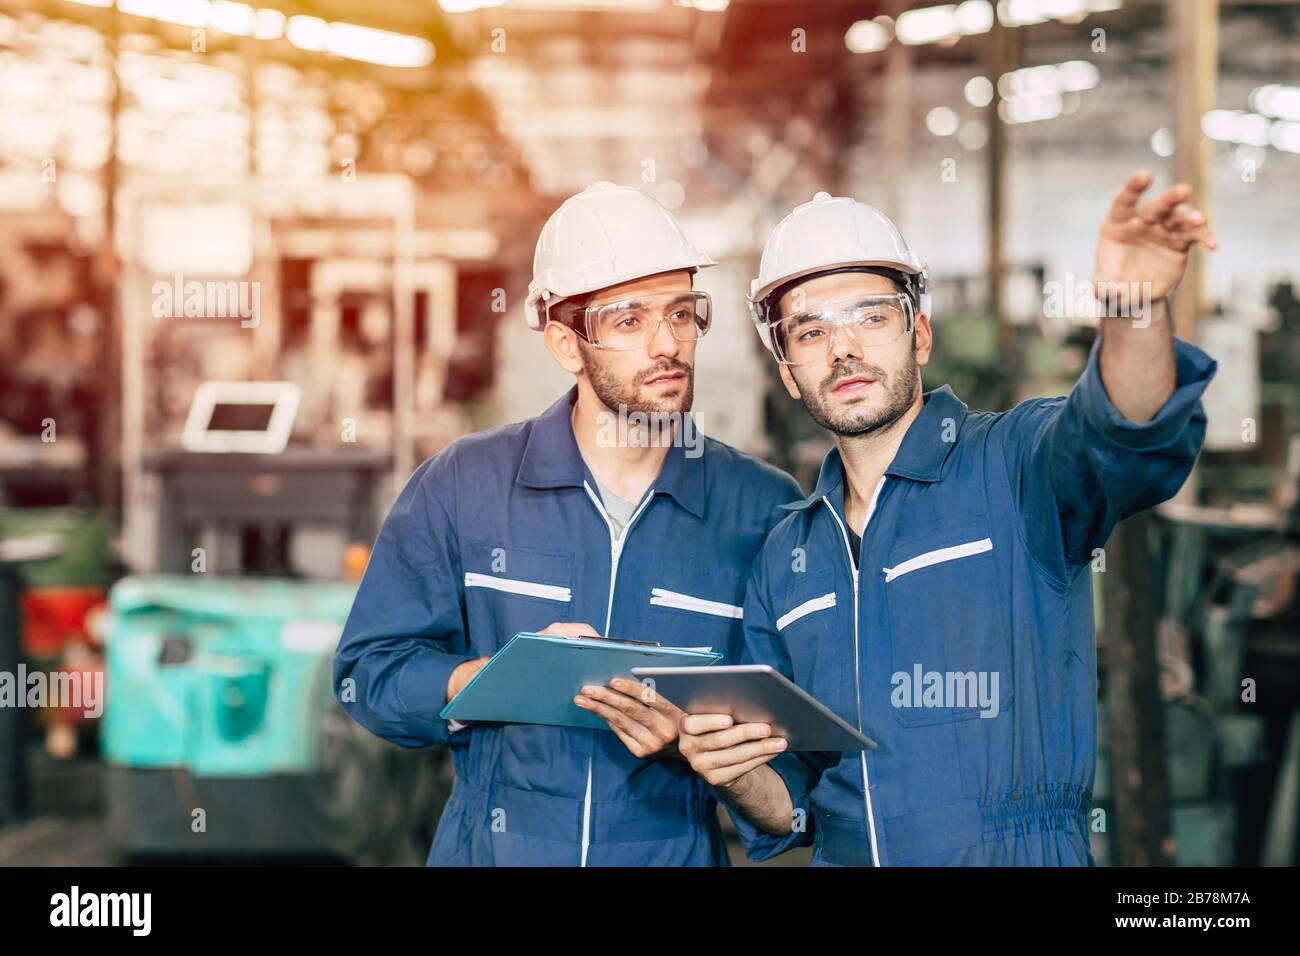 Deux ingénieurs travaillant avec un casque blanc et un casque de sécurité pour travailler dans une tablette à poignée industrielle. Banque D'Images